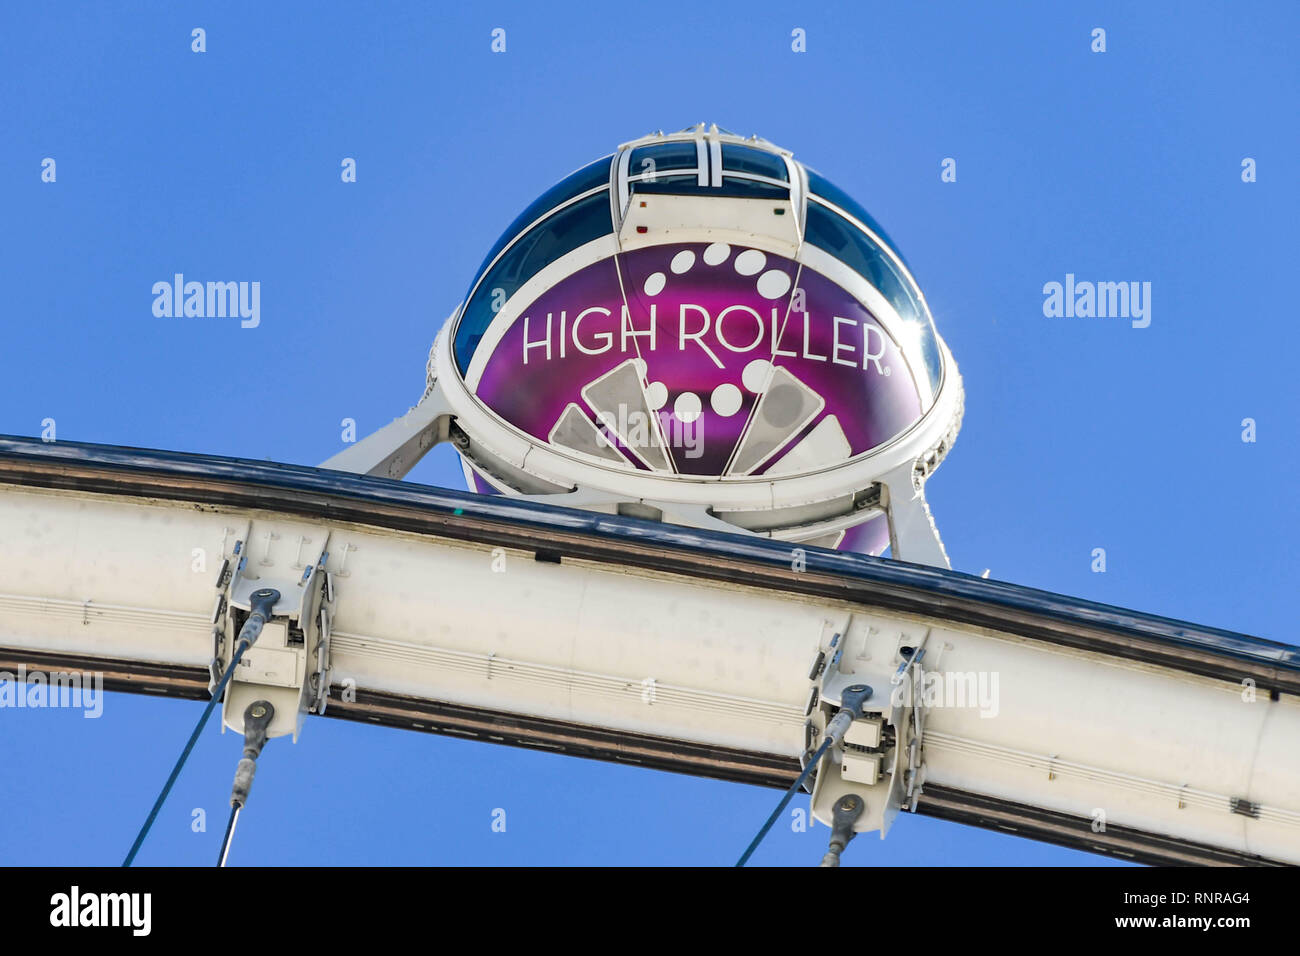 LAS VEGAS, NEVADA - Febbraio 2019: vista ravvicinata di una capsula sulla parte superiore del rullo di alta ruota gigante ride contro un cielo blu. Foto Stock